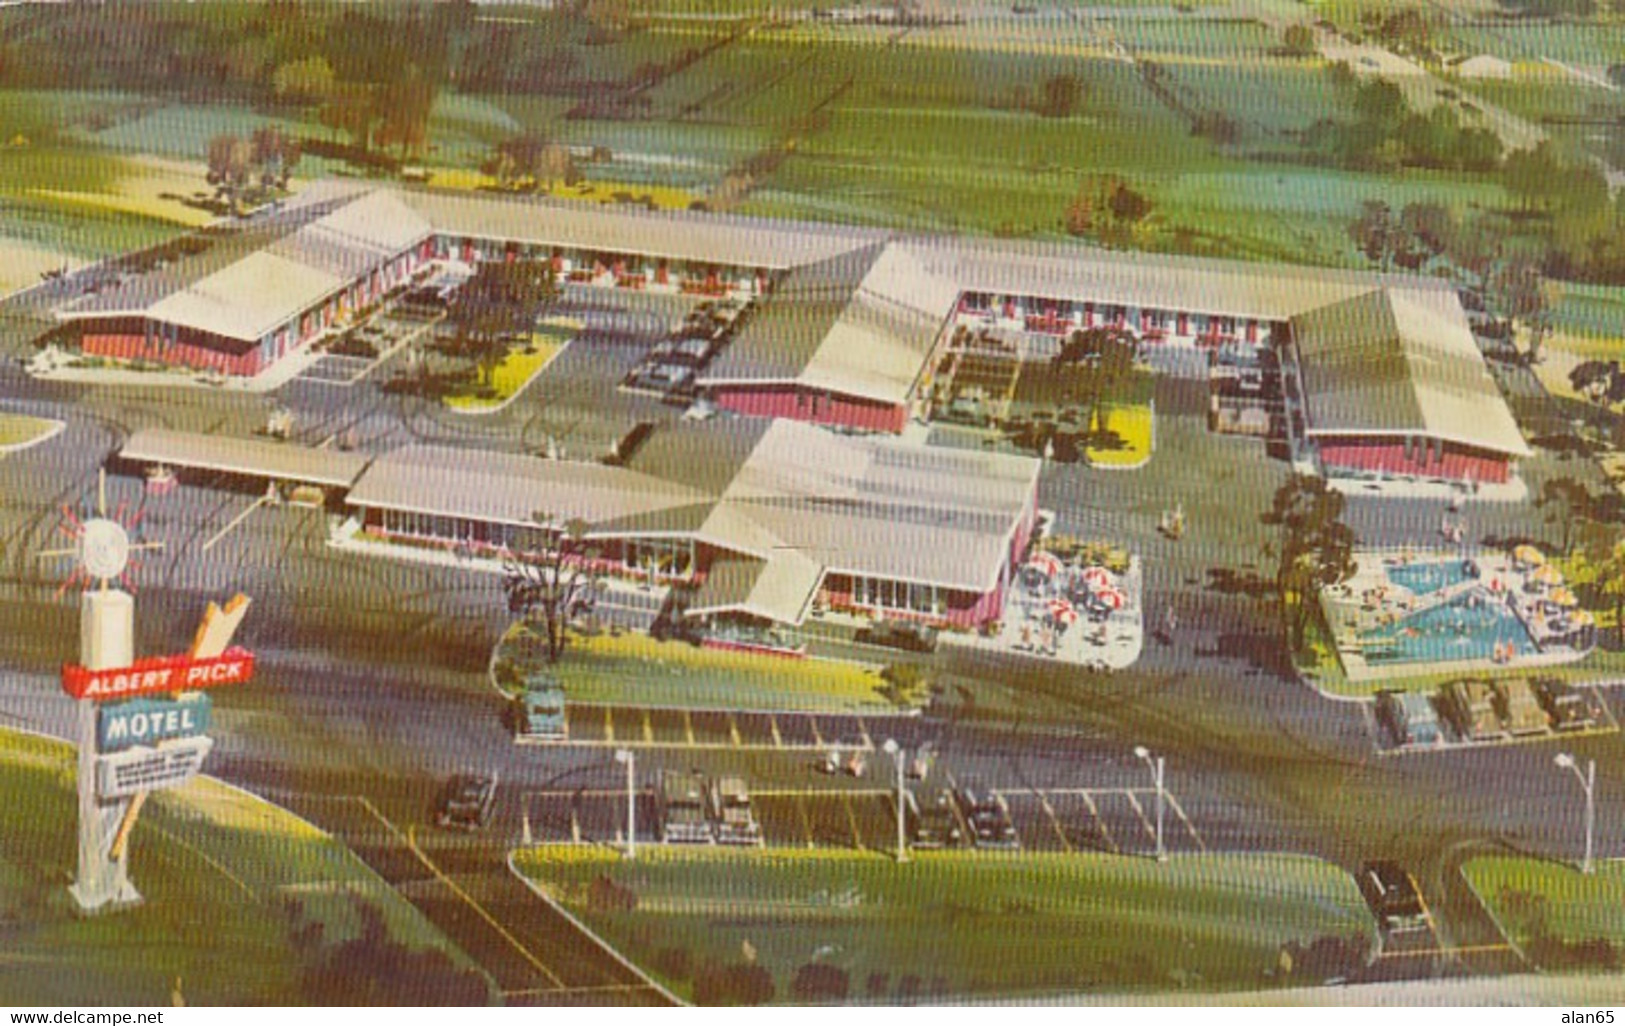 St. Louis Missouri, Route 66 Bypass, Albert Pick Motel, C1950s/60s Vintage Postcard - Route ''66'